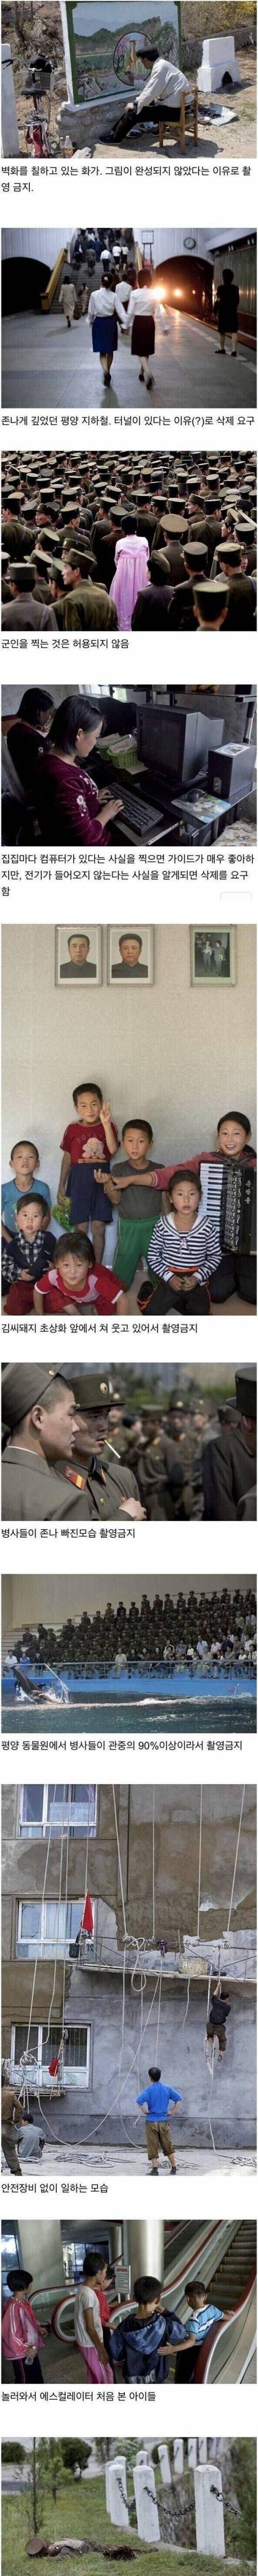 6 사진작가가 몰래 찍었던 북한 사진.jpg